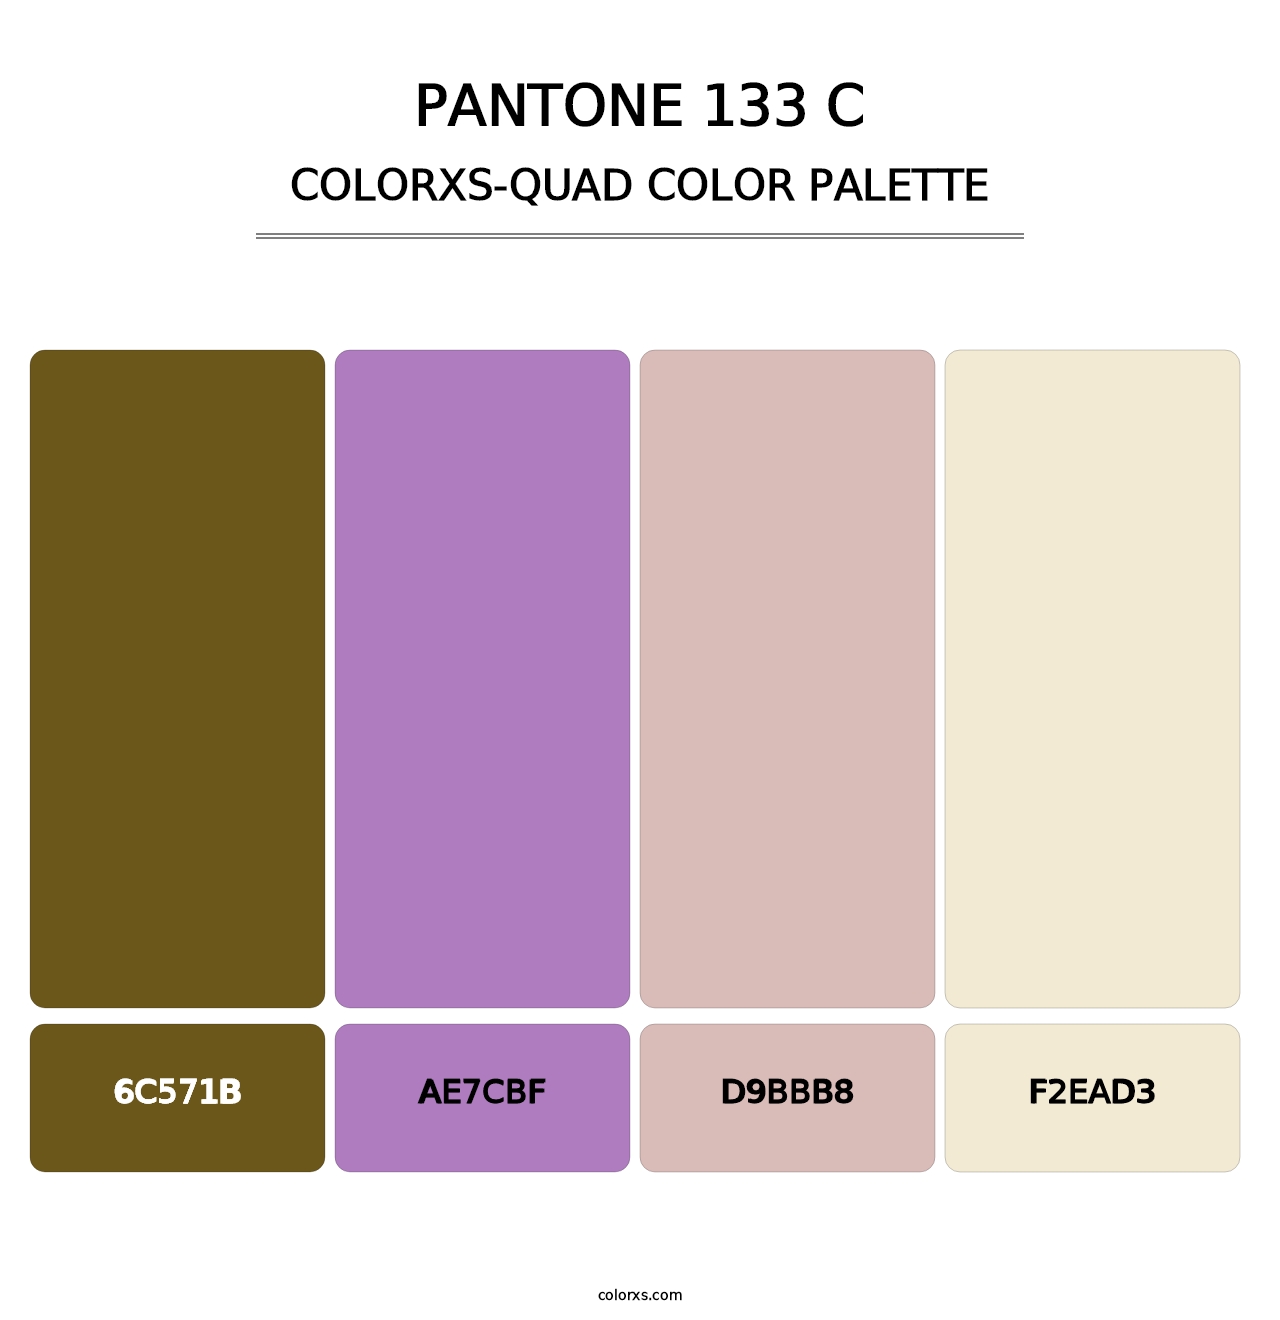 PANTONE 133 C - Colorxs Quad Palette